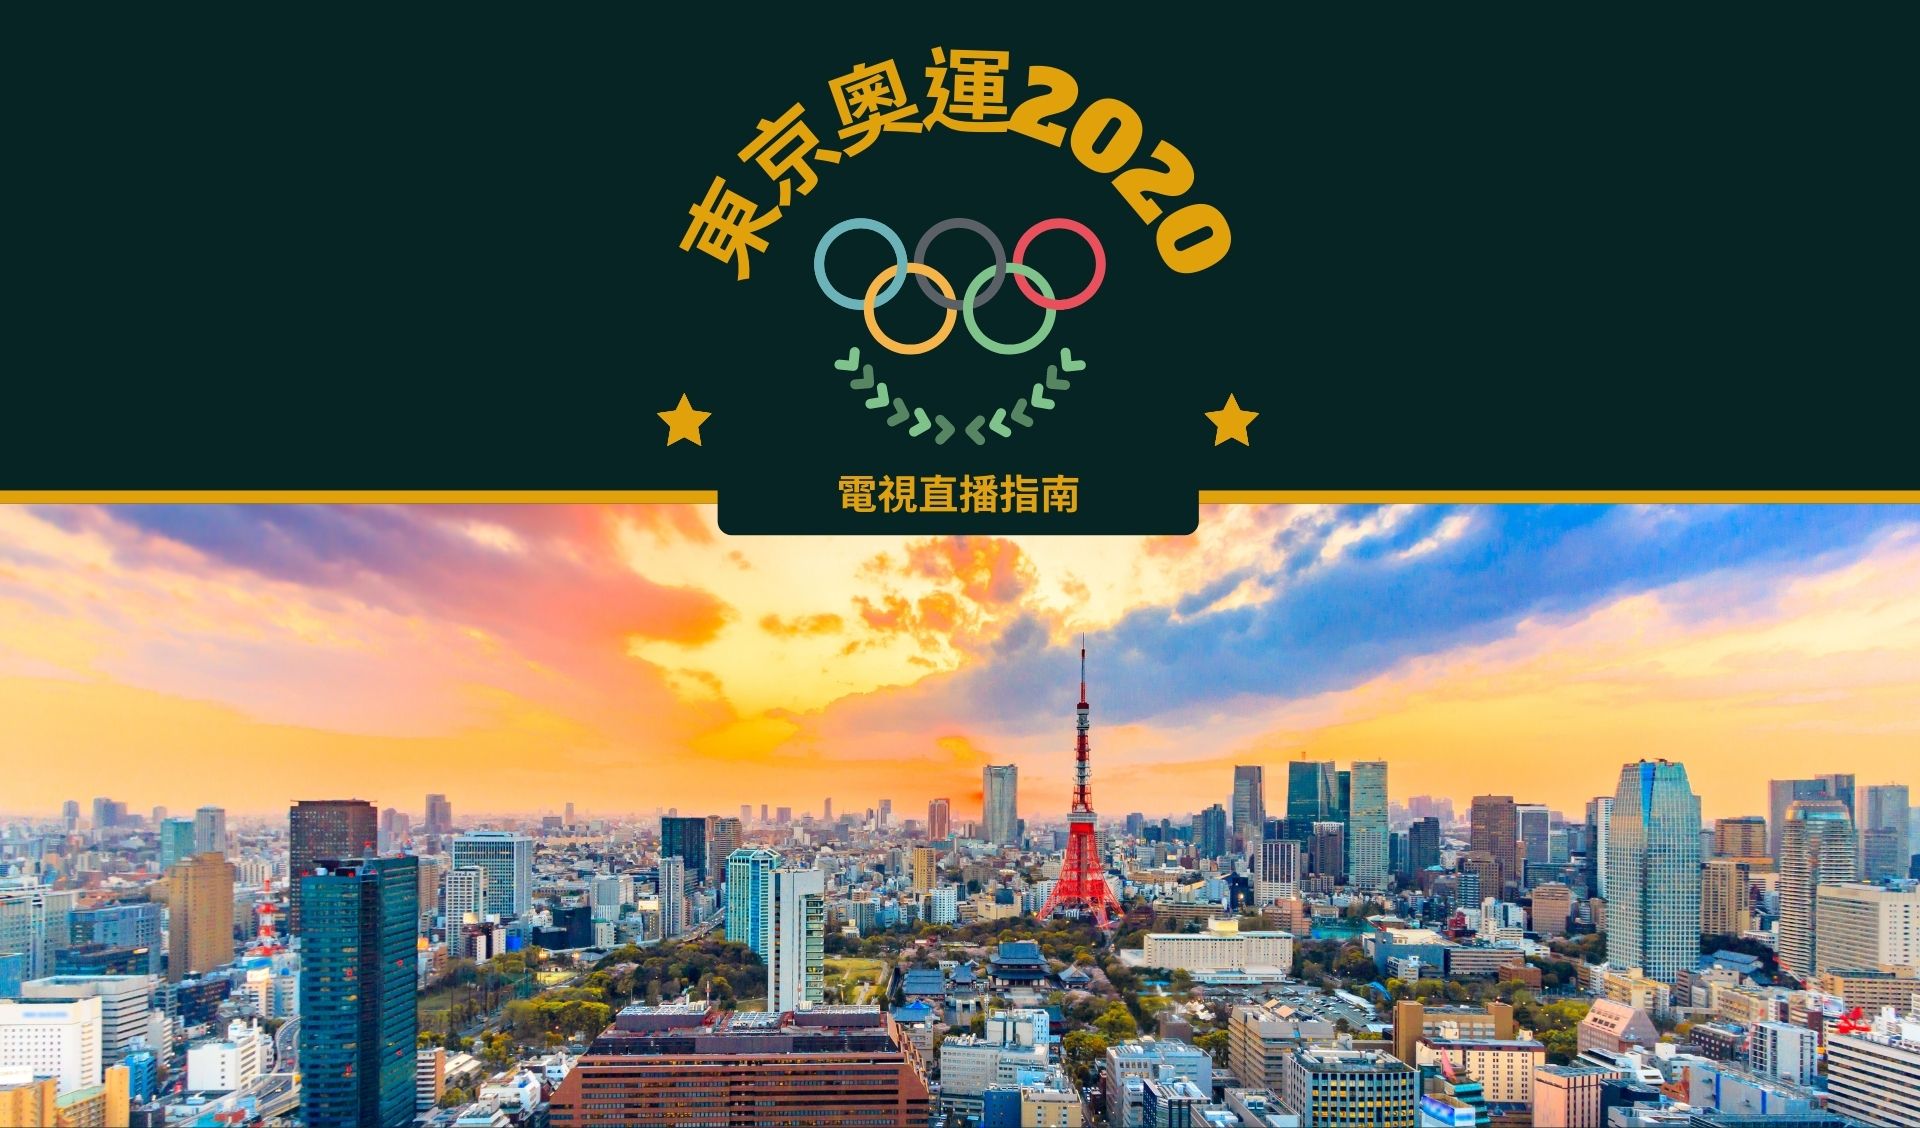 東京奧運2020電視直播指南